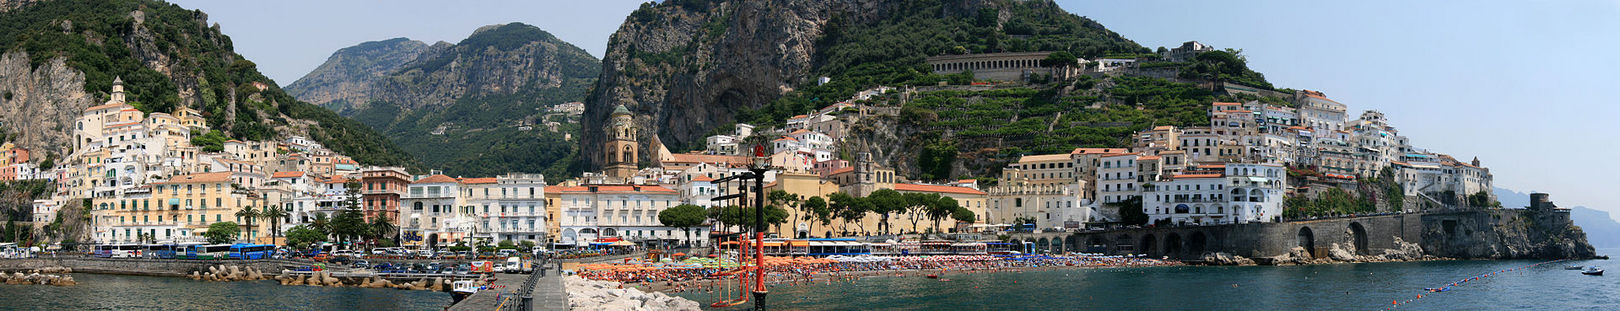 Amalfi panorama I